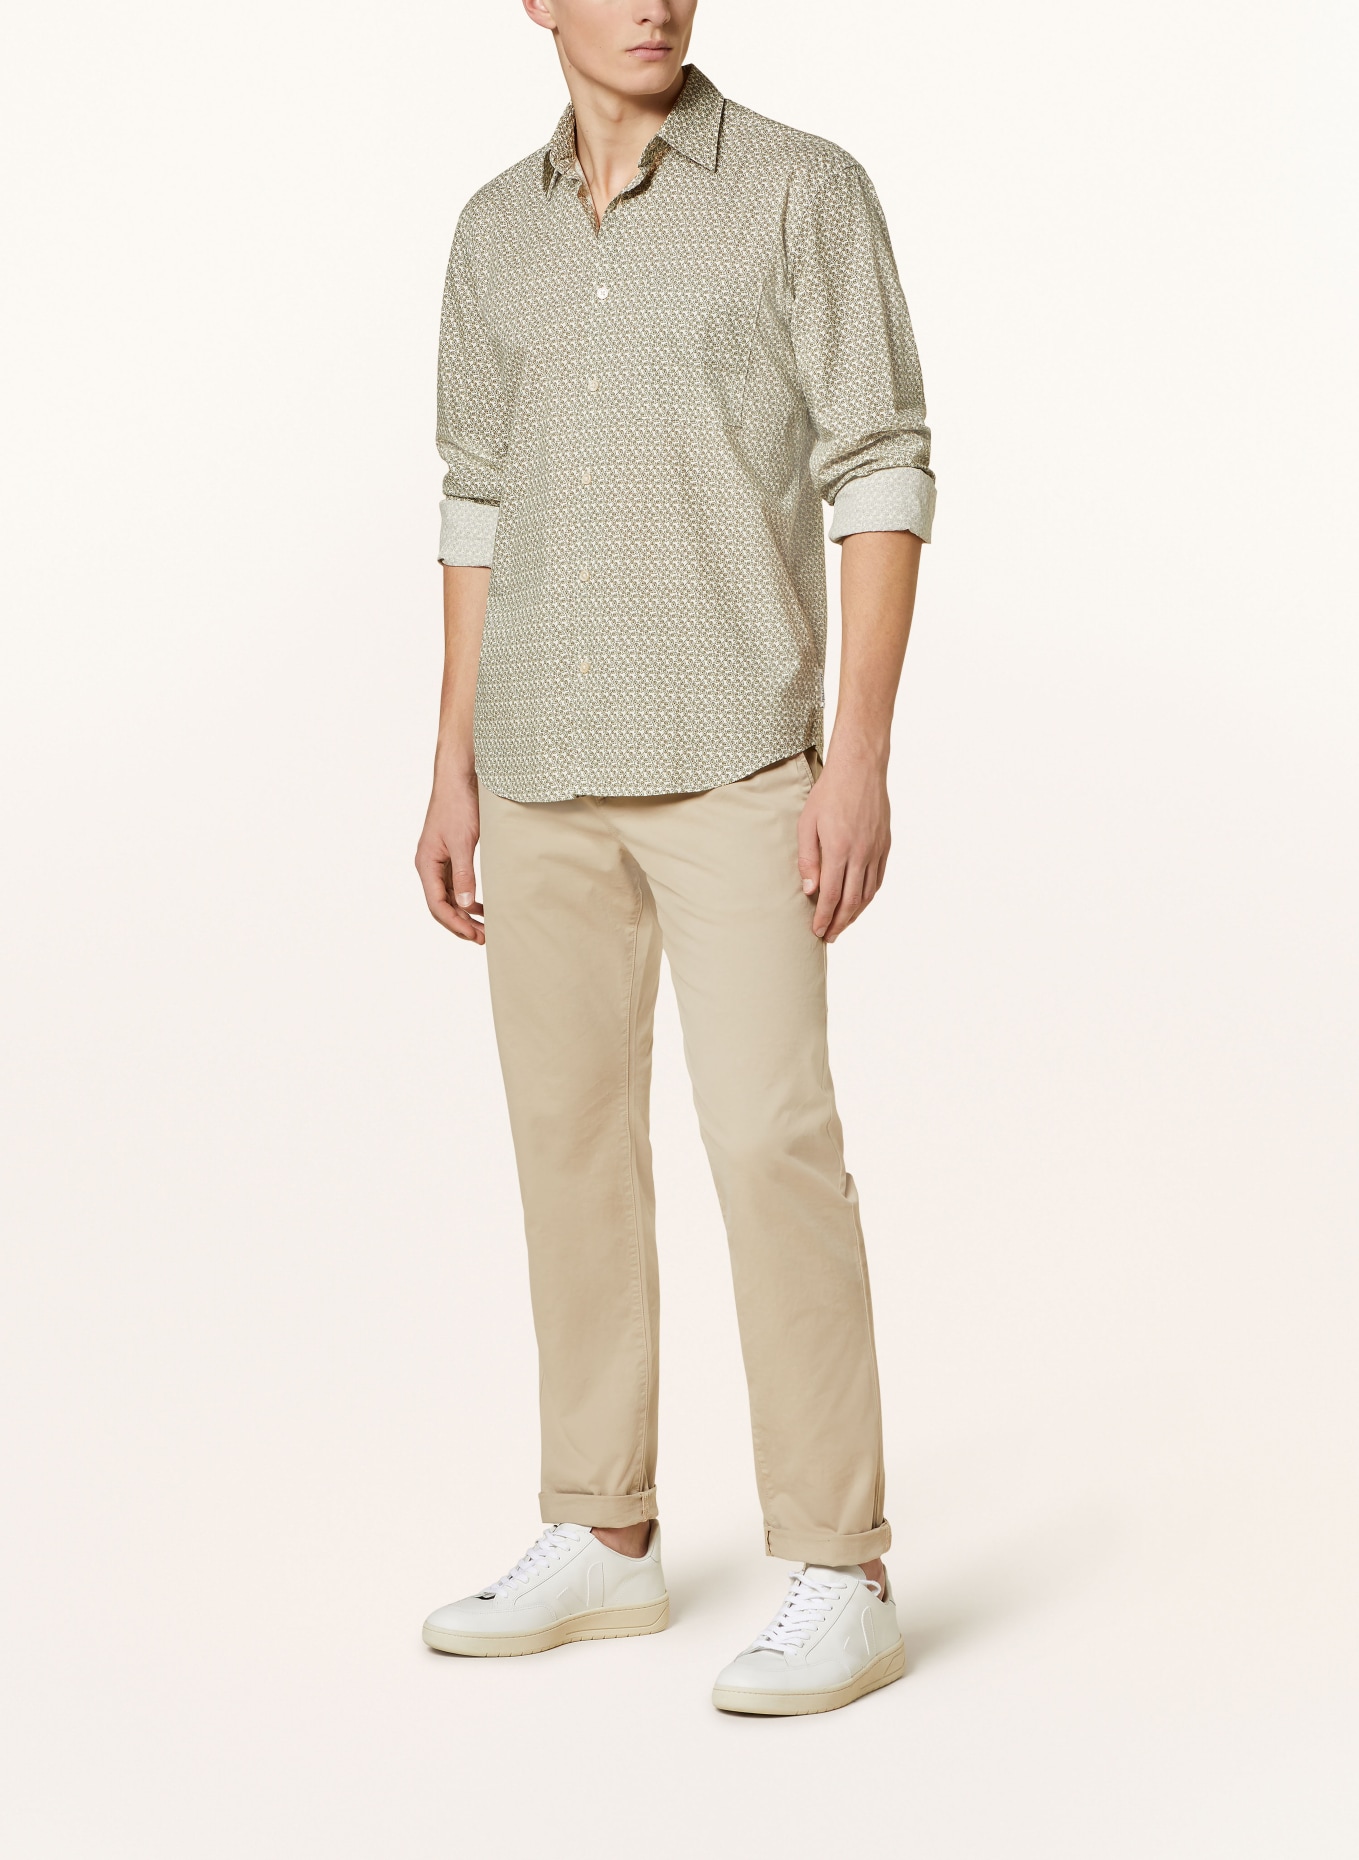 Marc O'Polo Shirt regular fit, Color: ECRU/ OLIVE (Image 2)